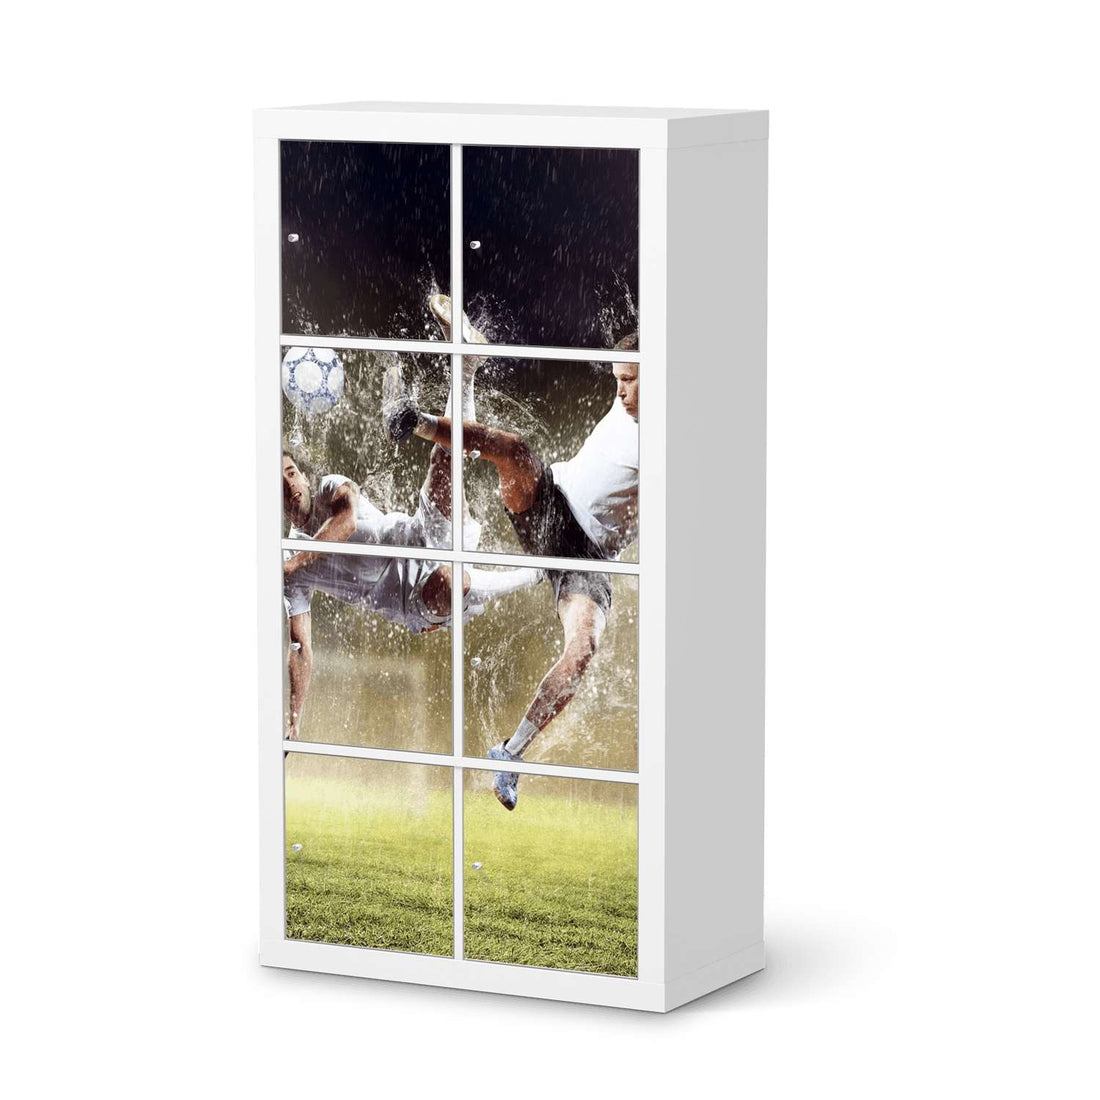 Folie für Möbel Soccer - IKEA Kallax Regal 8 Türen  - weiss